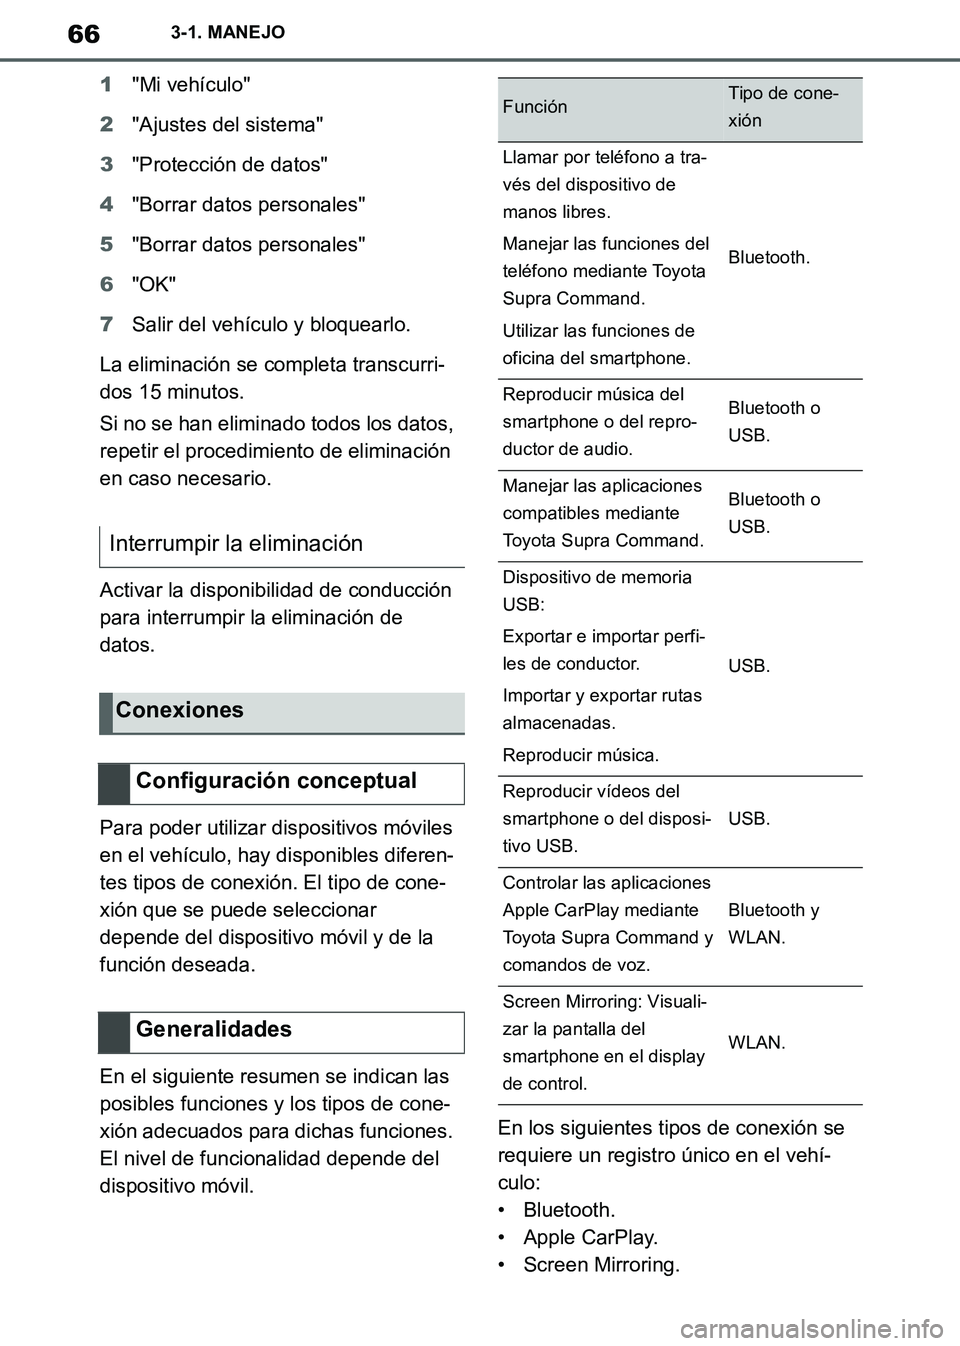 TOYOTA SUPRA 2019  Manuale de Empleo (in Spanish) 66
Supra Owners Manual_ES
3-1. MANEJO
1"Mi vehículo"
2"Ajustes del sistema"
3"Protección de datos"
4"Borrar datos personales"
5"Borrar datos personales"
6"OK"
7Salir del vehículo y bloquearlo.
La 